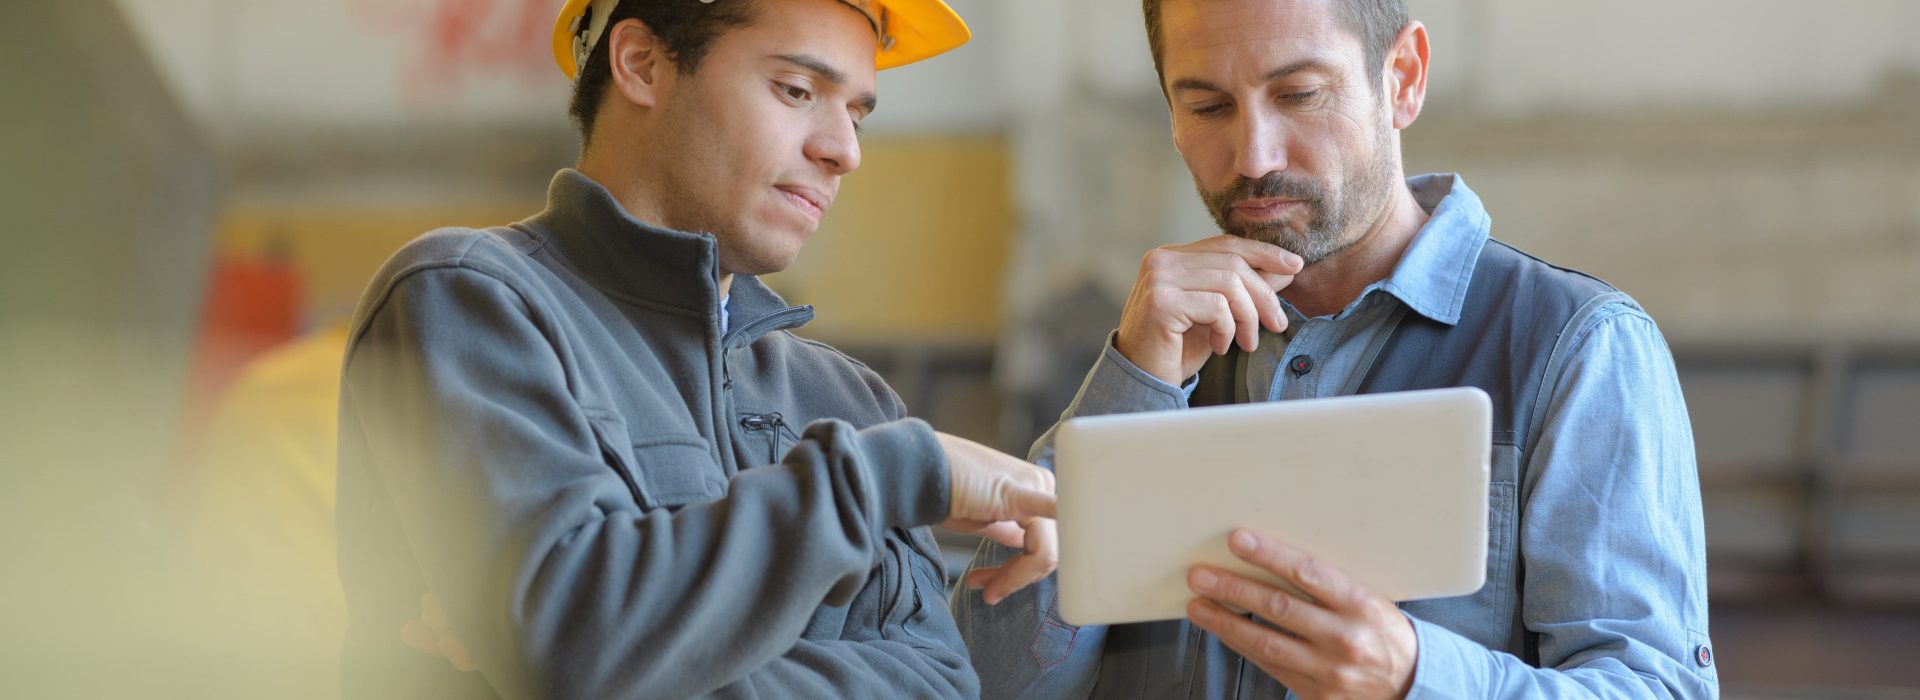 Deux hommes sur un chantier discutant avec une tablette à la main - aide au retour à l'emploi